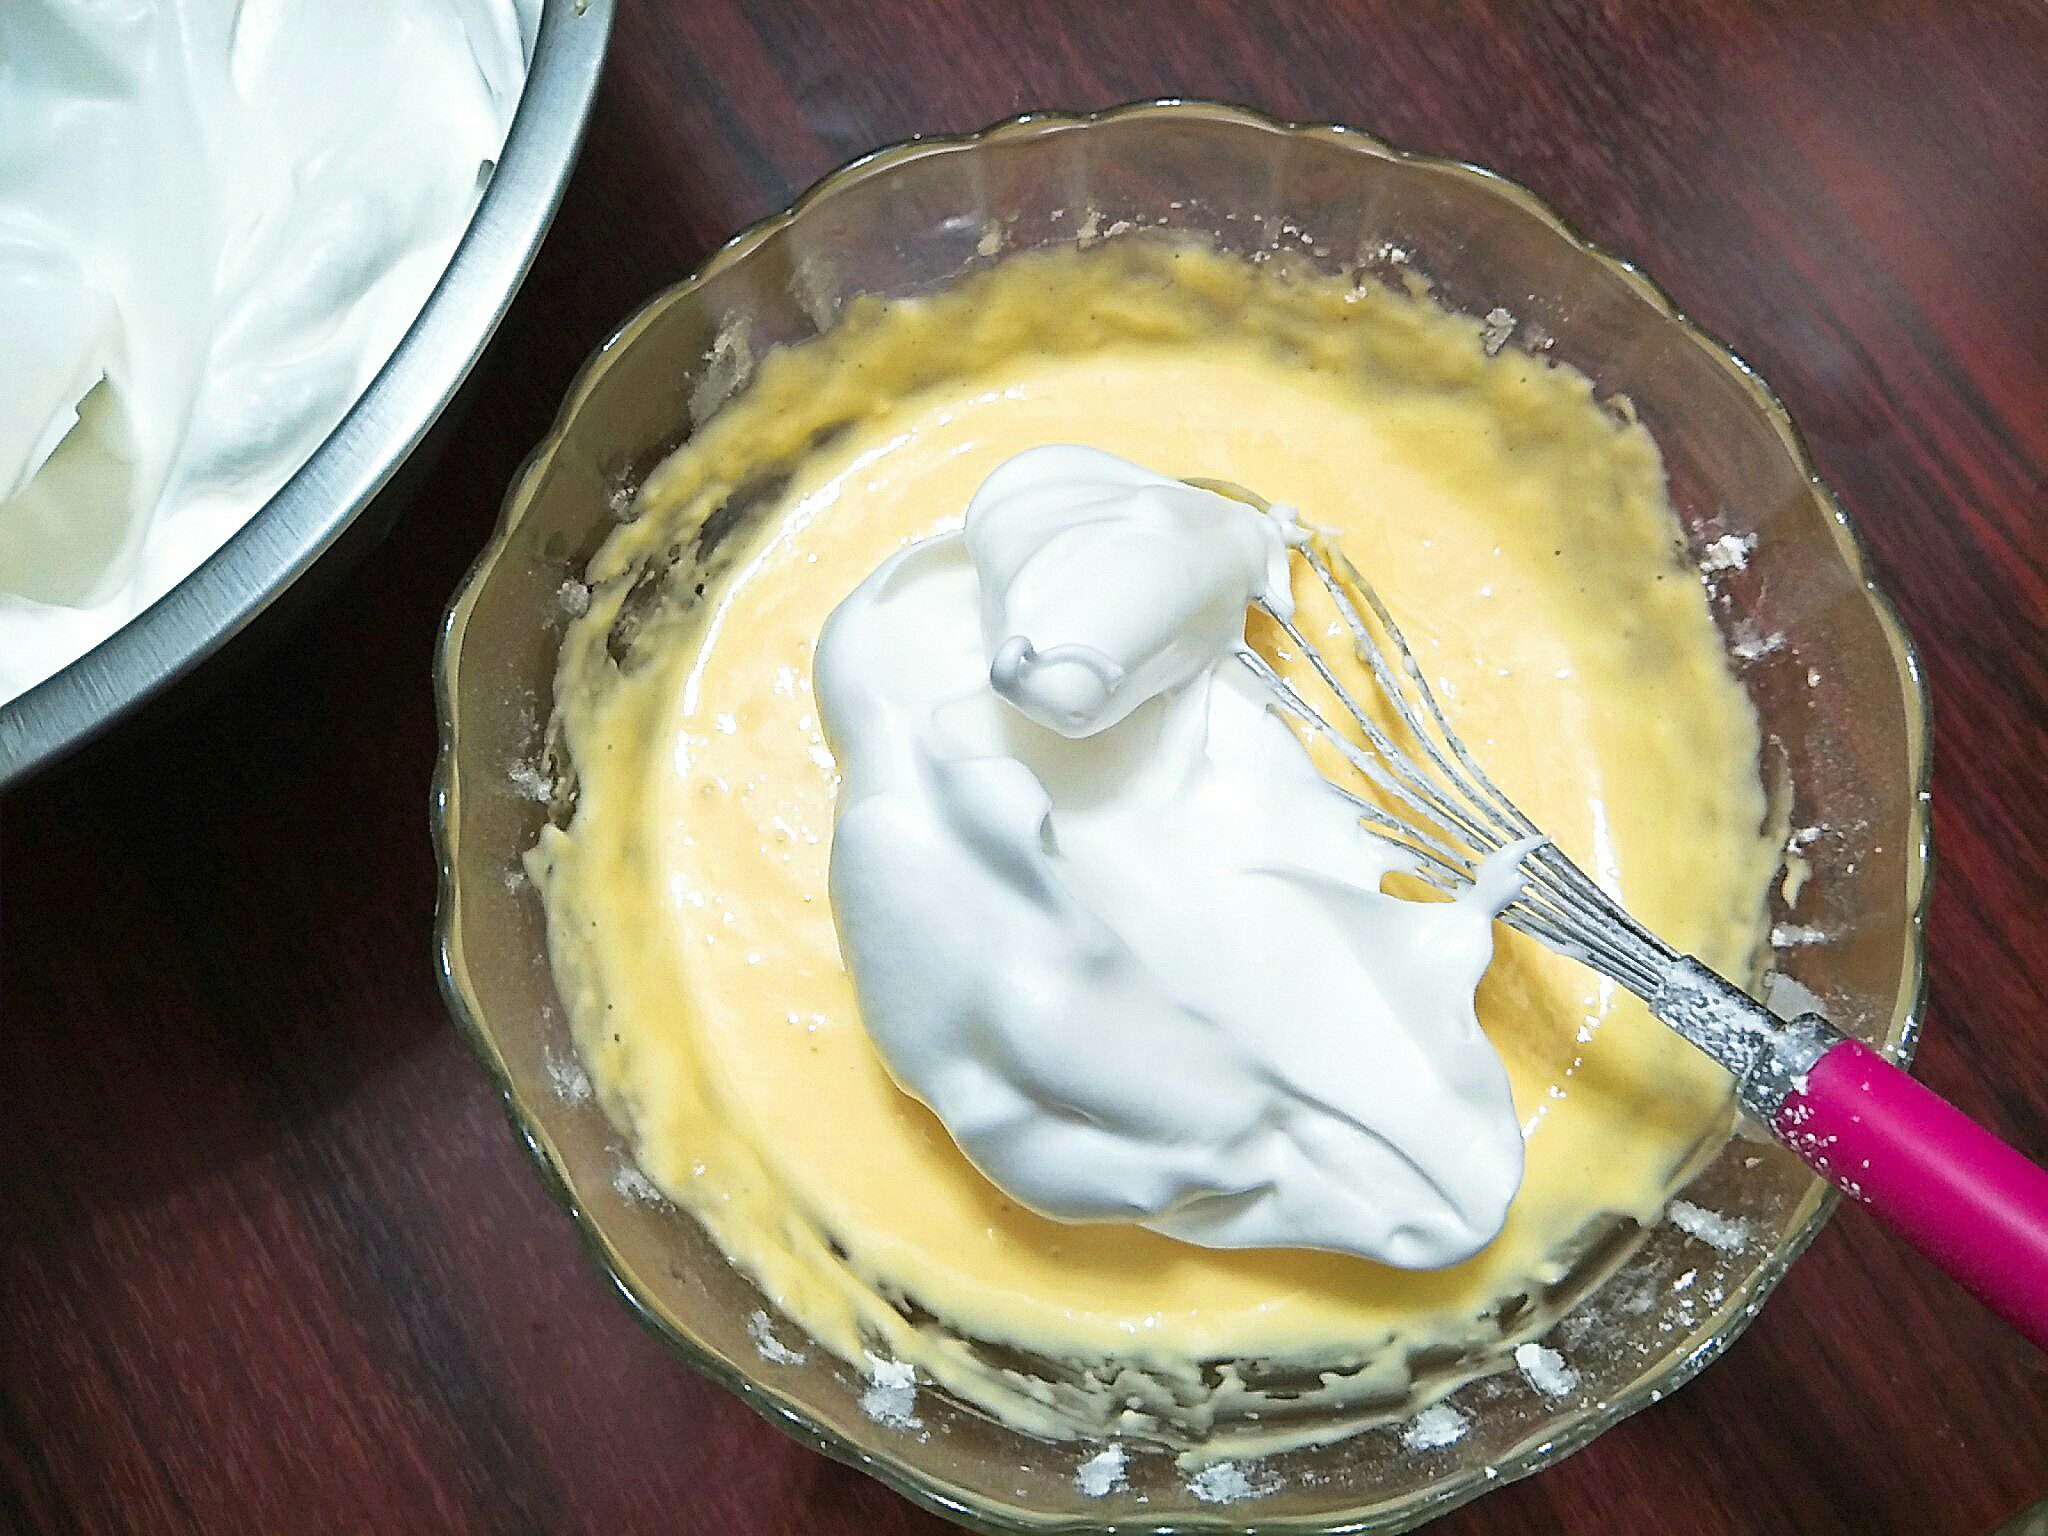 Phần kem bánh khi được làm từ kem bơ sẽ có khả năng tạo hình rất tốt